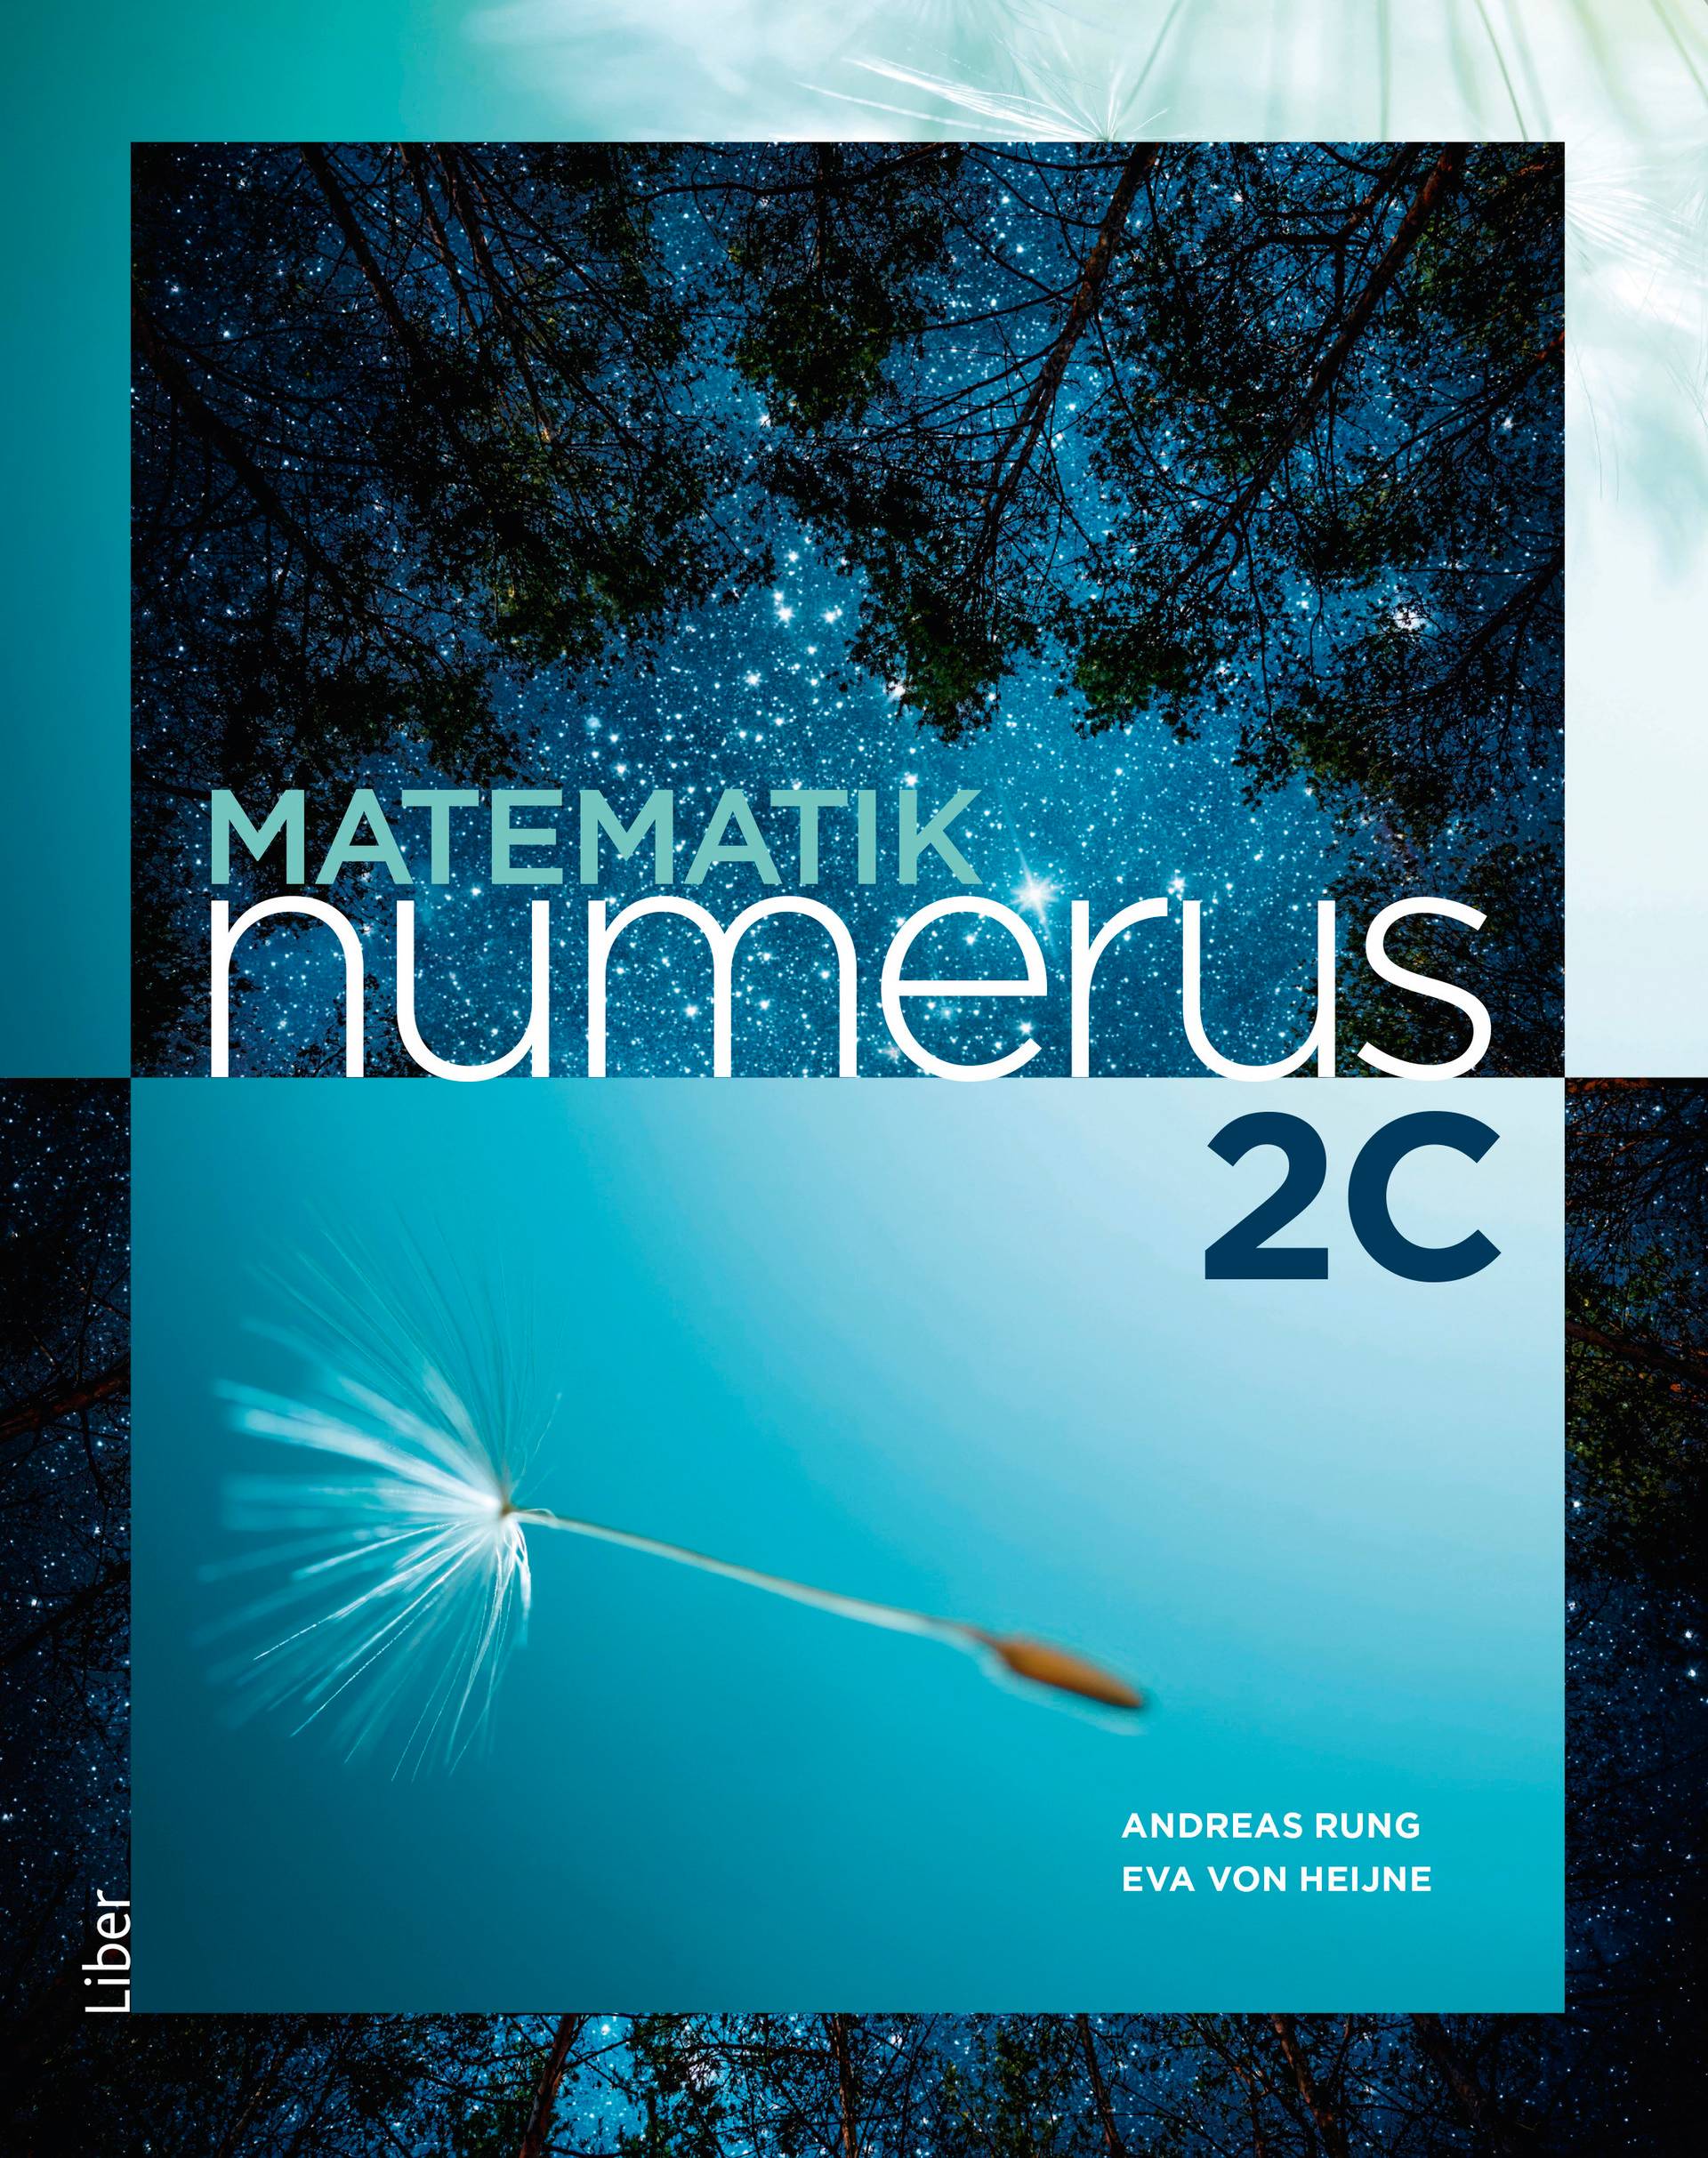 Matematik Numerus 2c